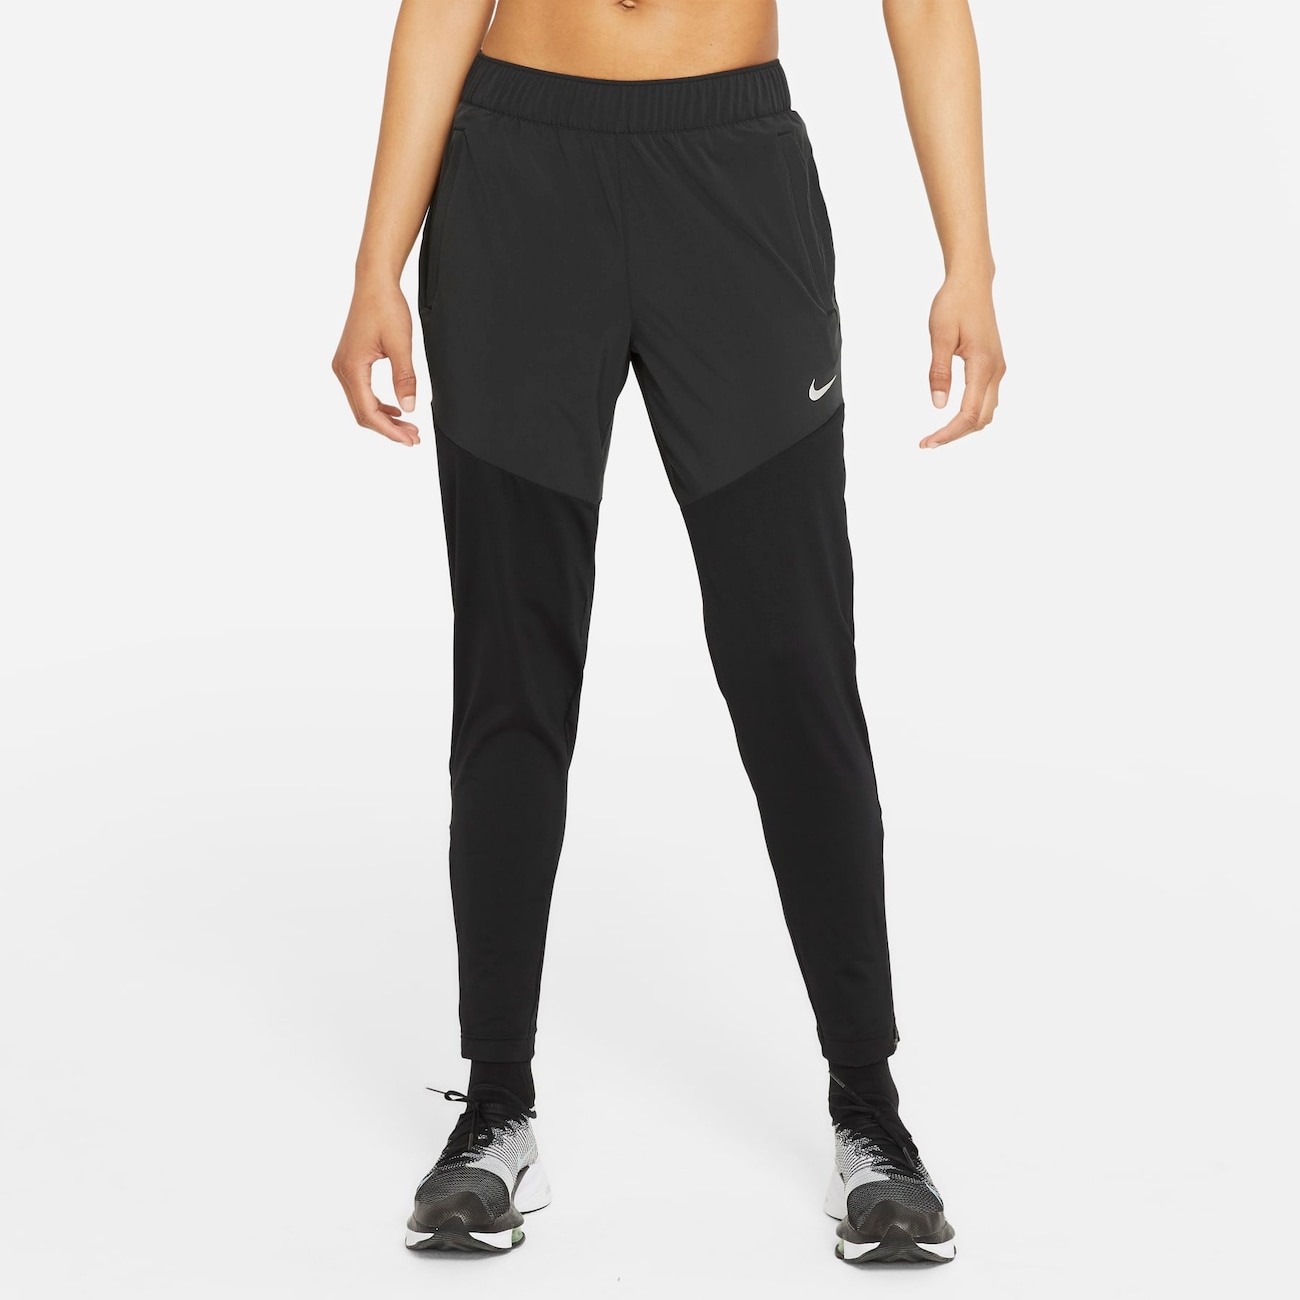 Calça Nike Dri-FIT Essential Feminina